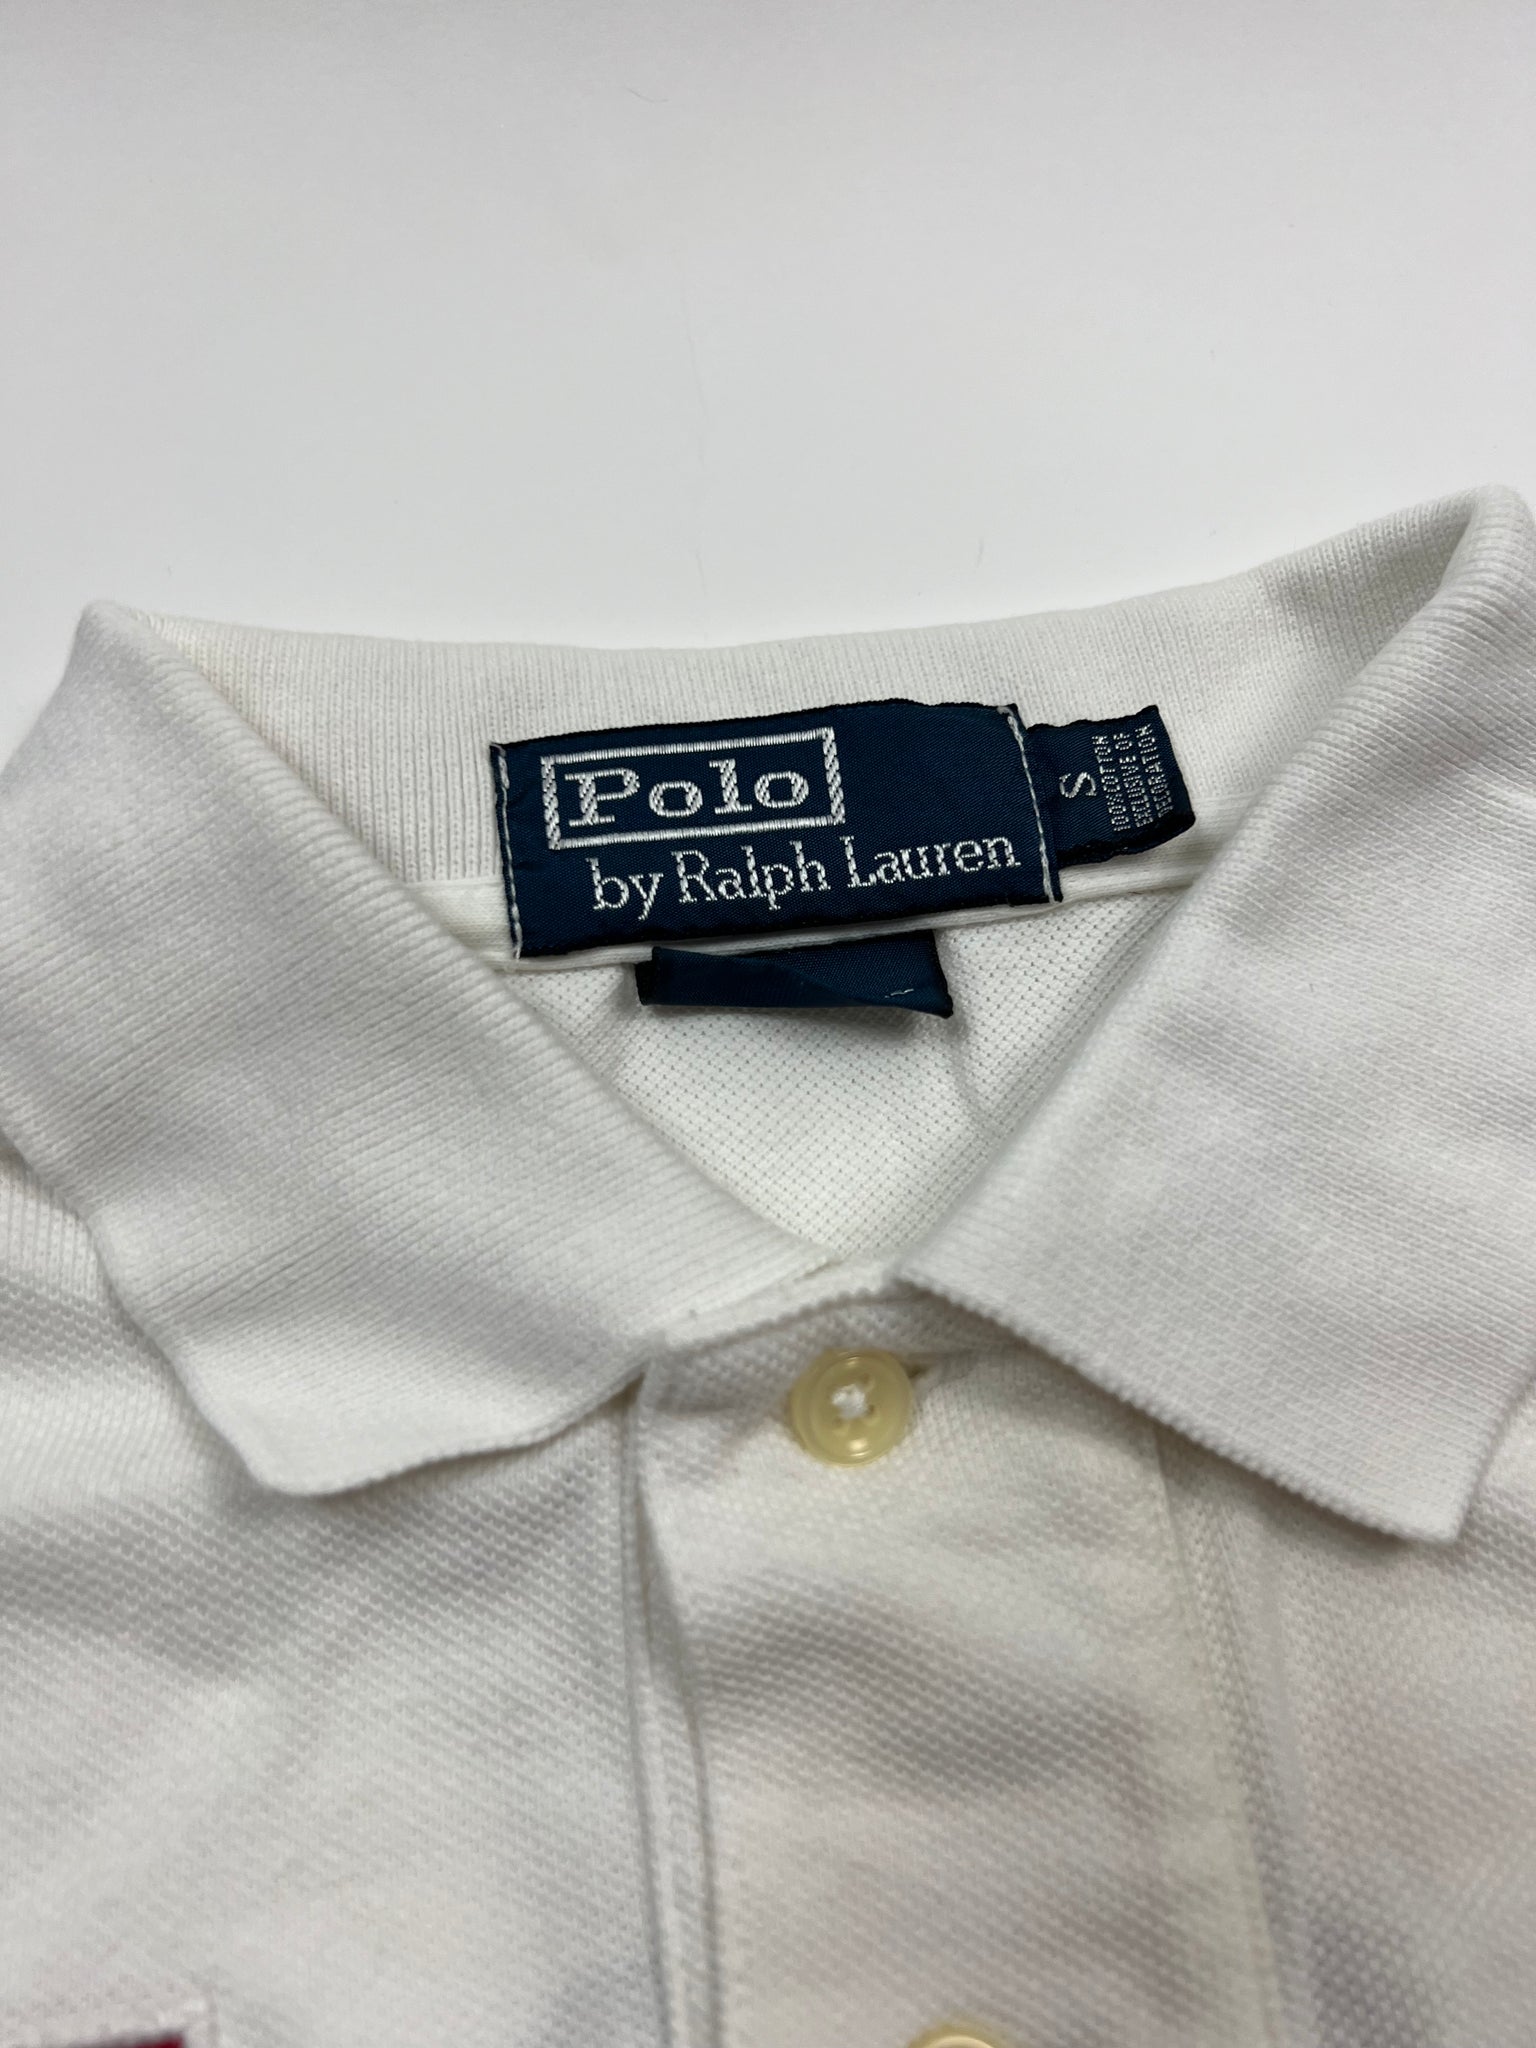 Polo Ralph Lauren Polo (S)